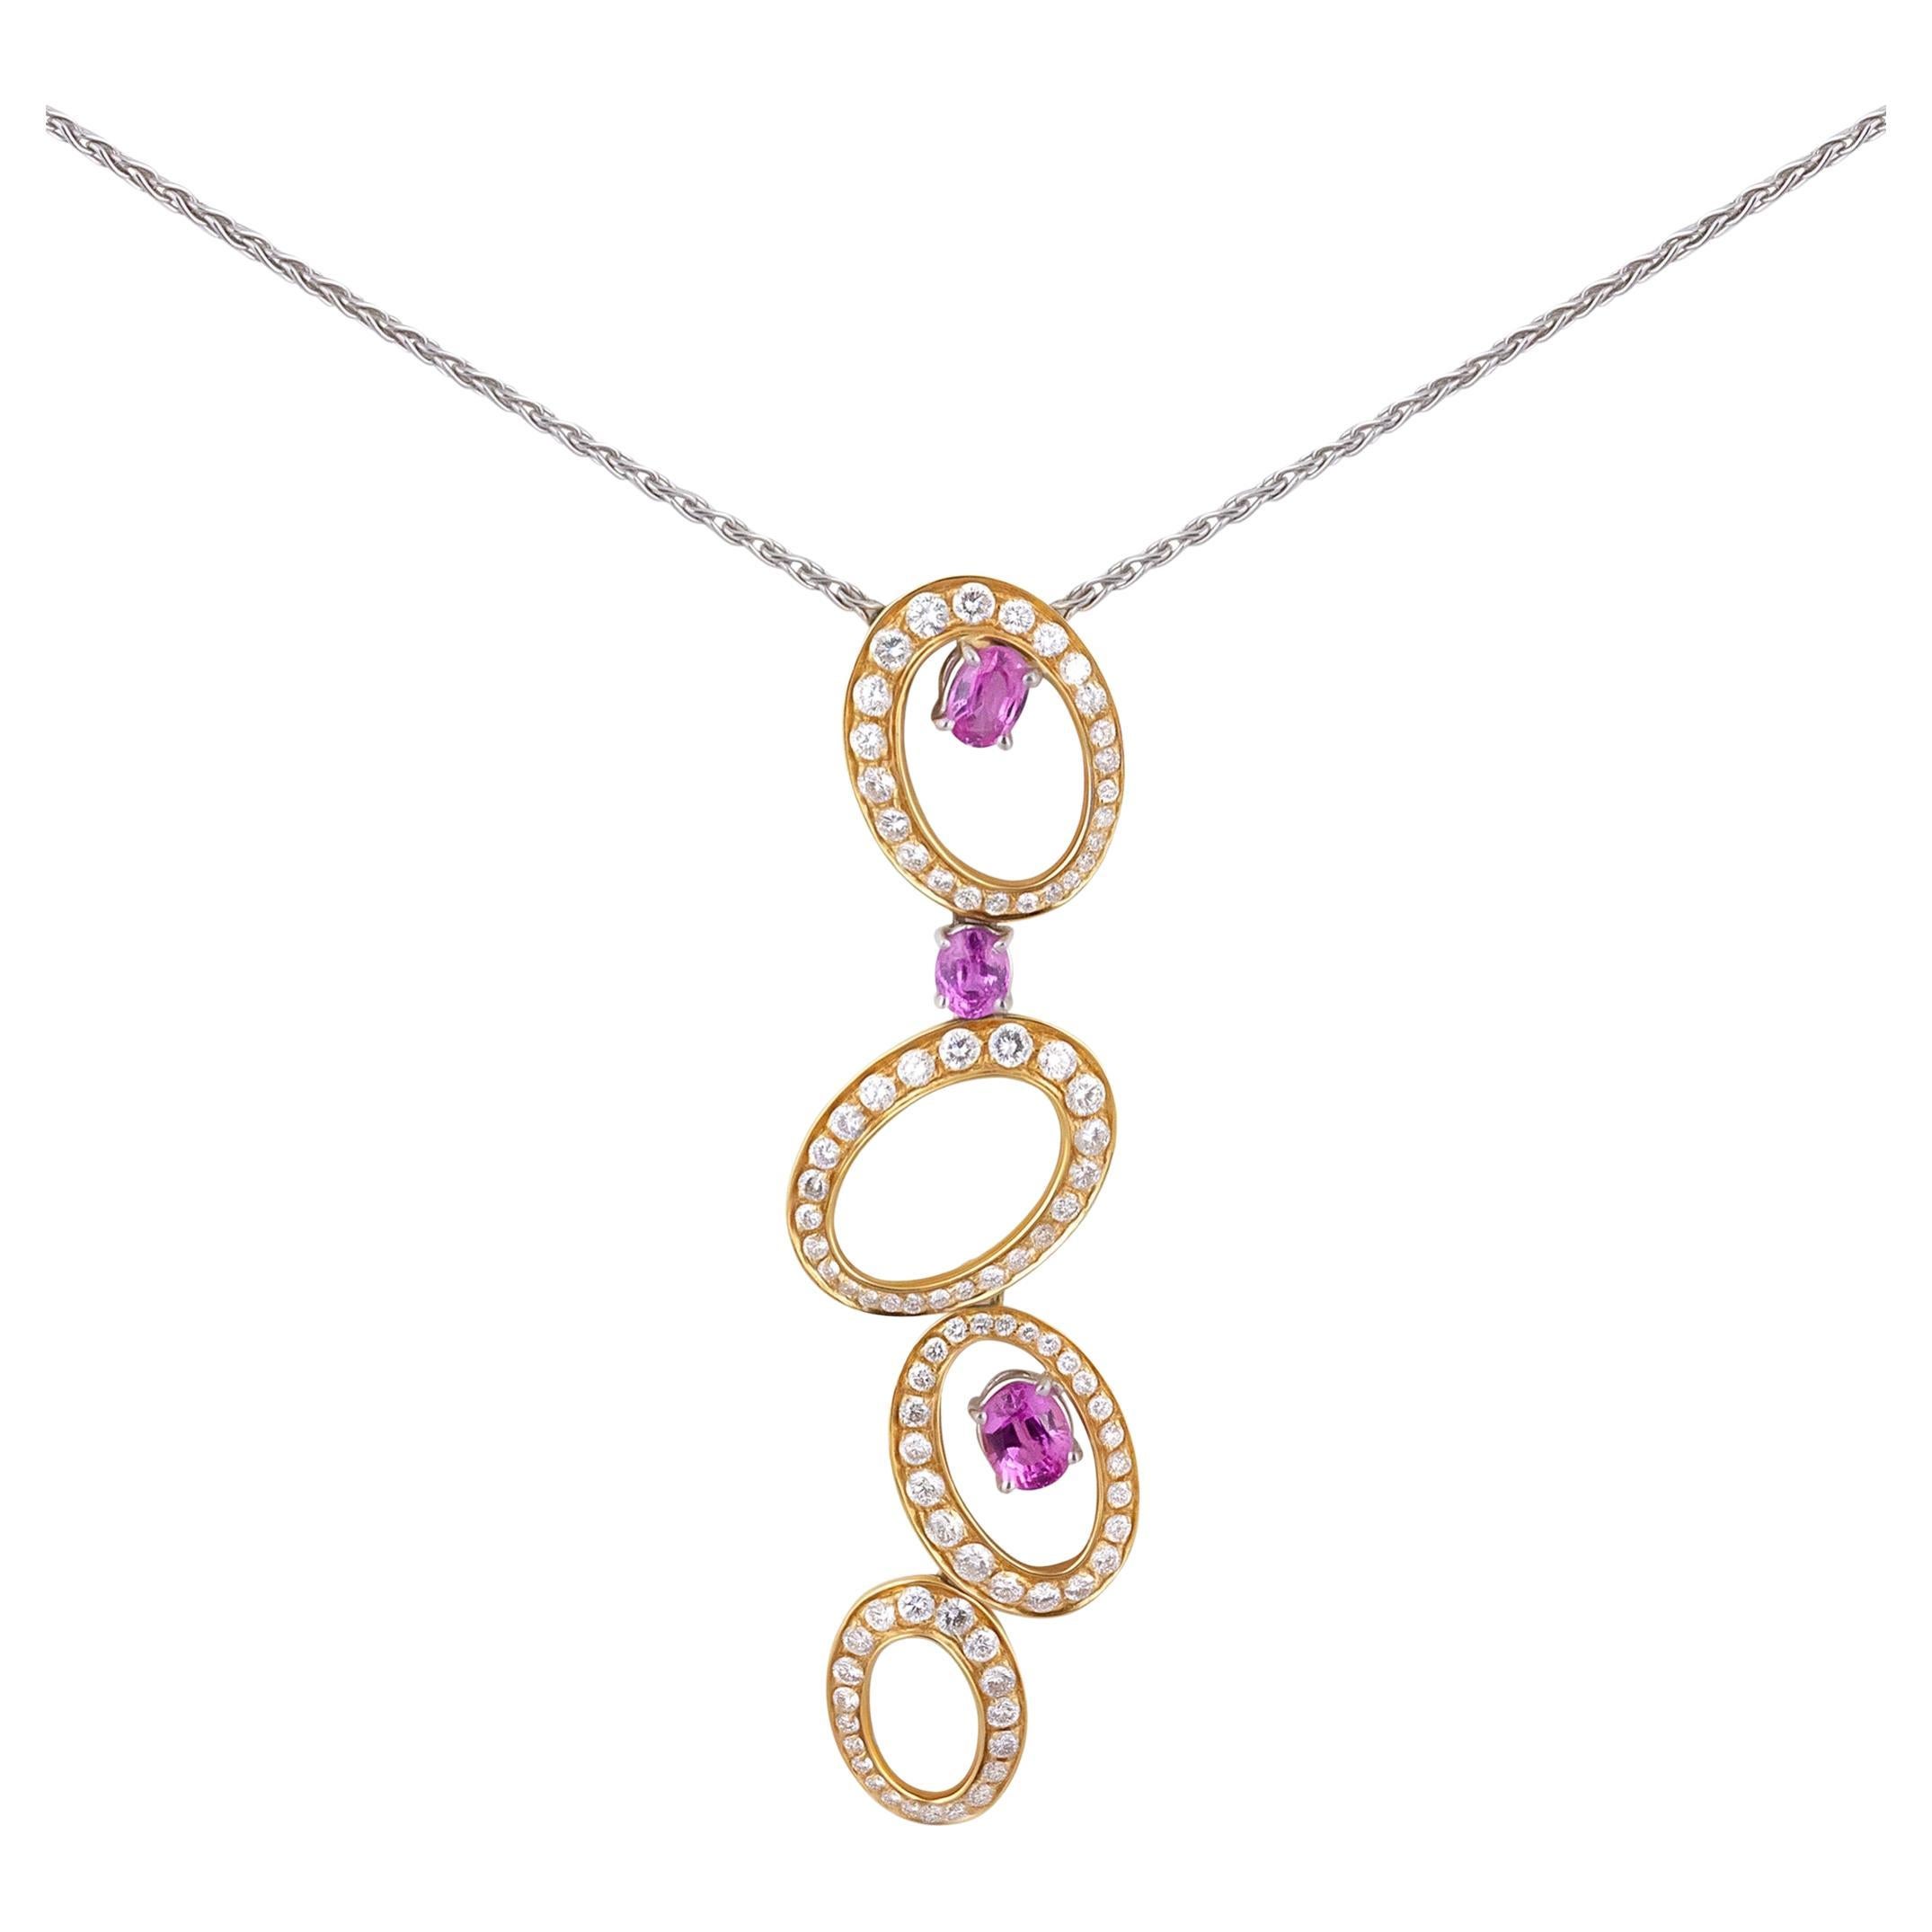 IO SI Halskette aus 18 Karat Weiß- und Gelbgold mit Diamant und Saphir